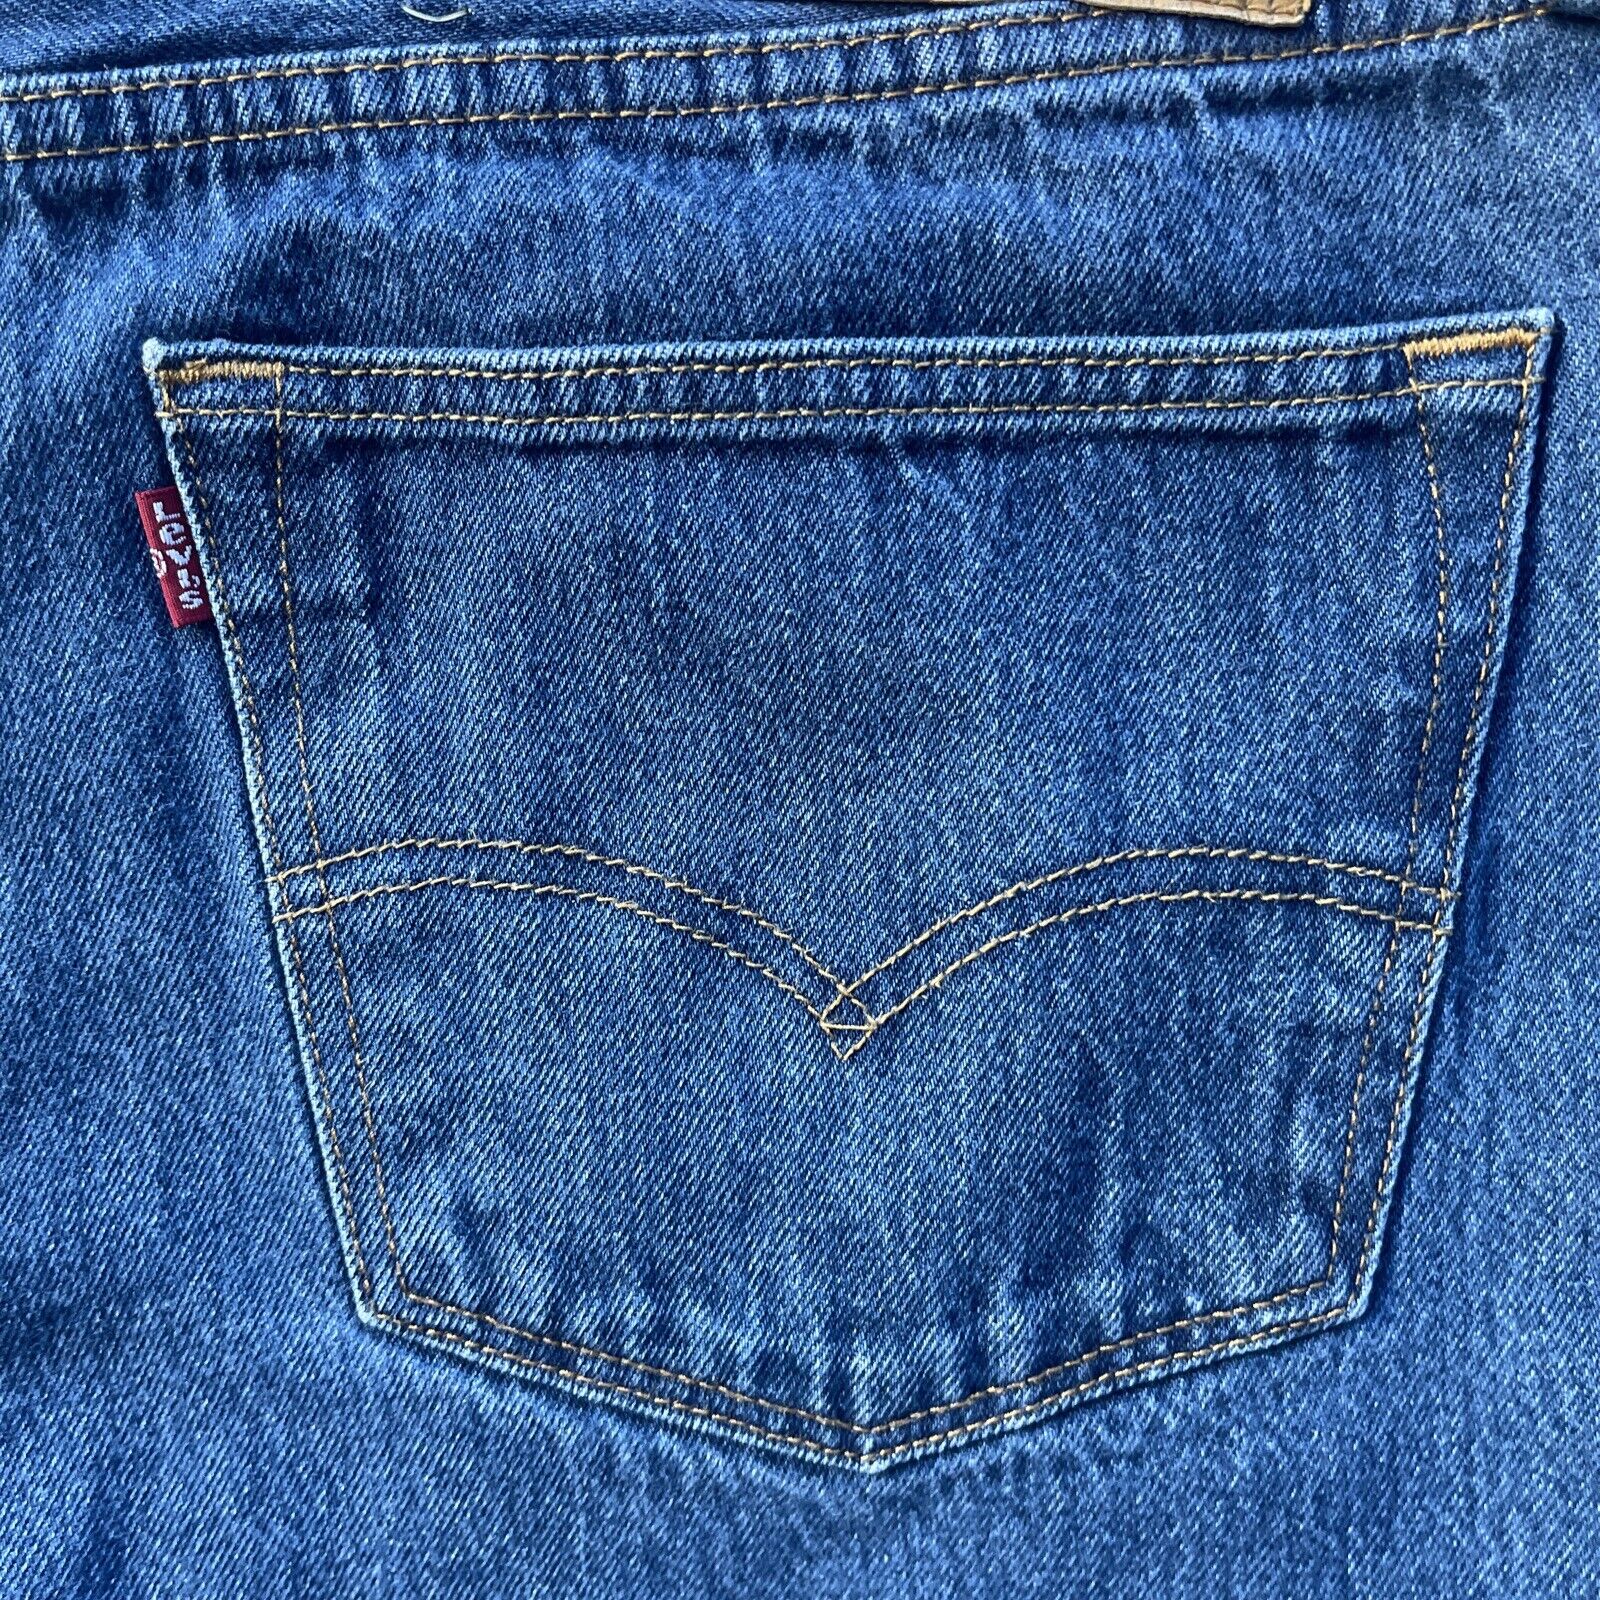 Levi's 501 Blue Jeans Men's label Size 40x30 Actu… - image 4